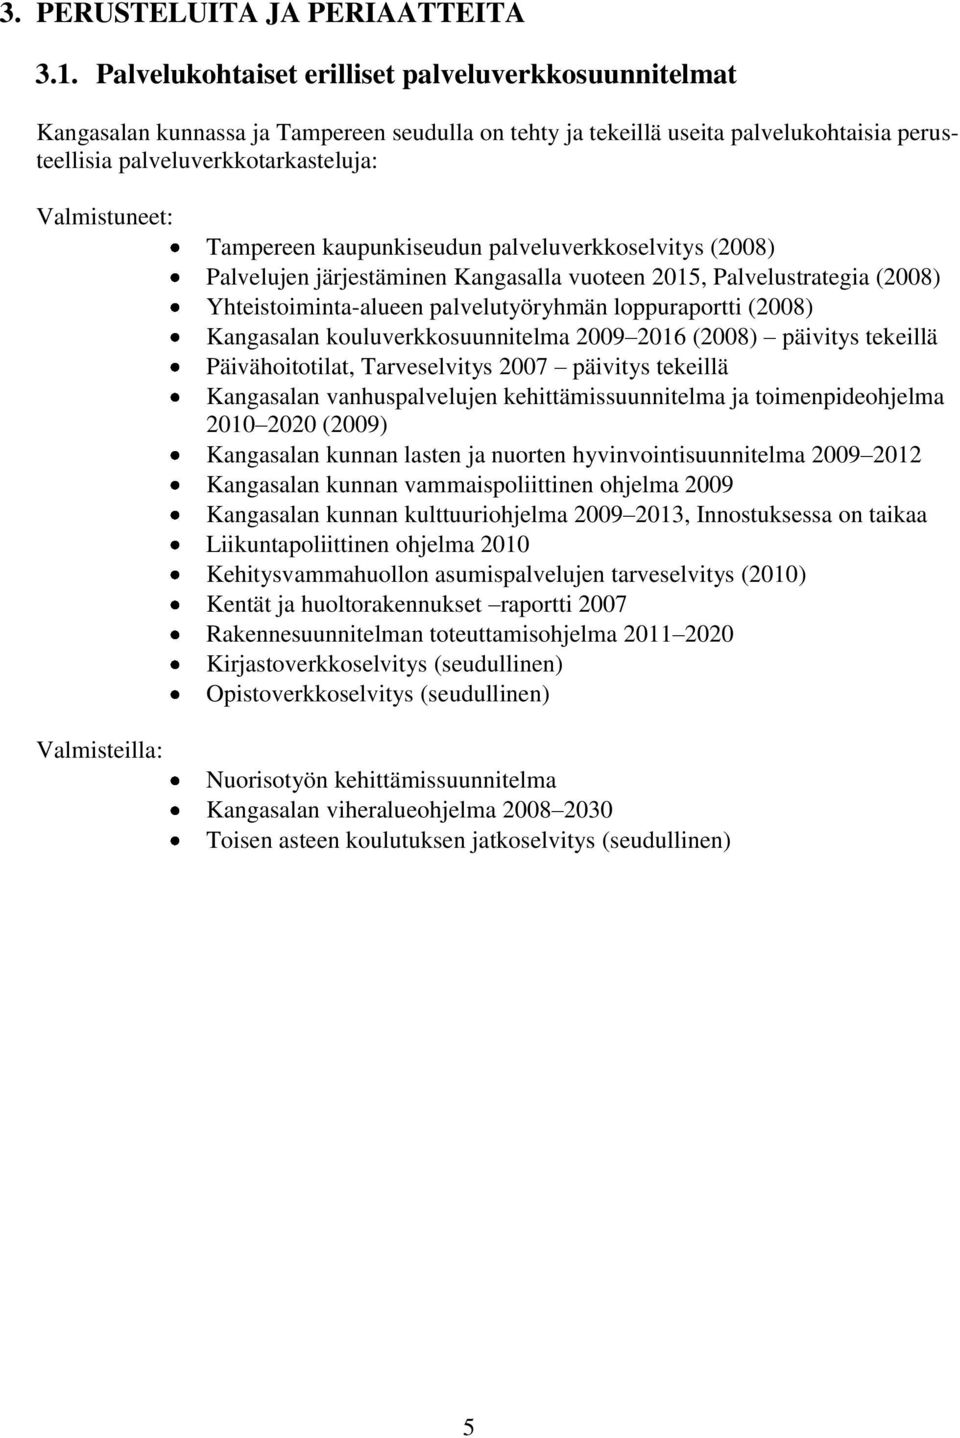 Valmisteilla: Tampereen kaupunkiseudun palveluverkkoselvitys (2008) Palvelujen järjestäminen Kangasalla vuoteen 2015, Palvelustrategia (2008) Yhteistoiminta-alueen palvelutyöryhmän loppuraportti